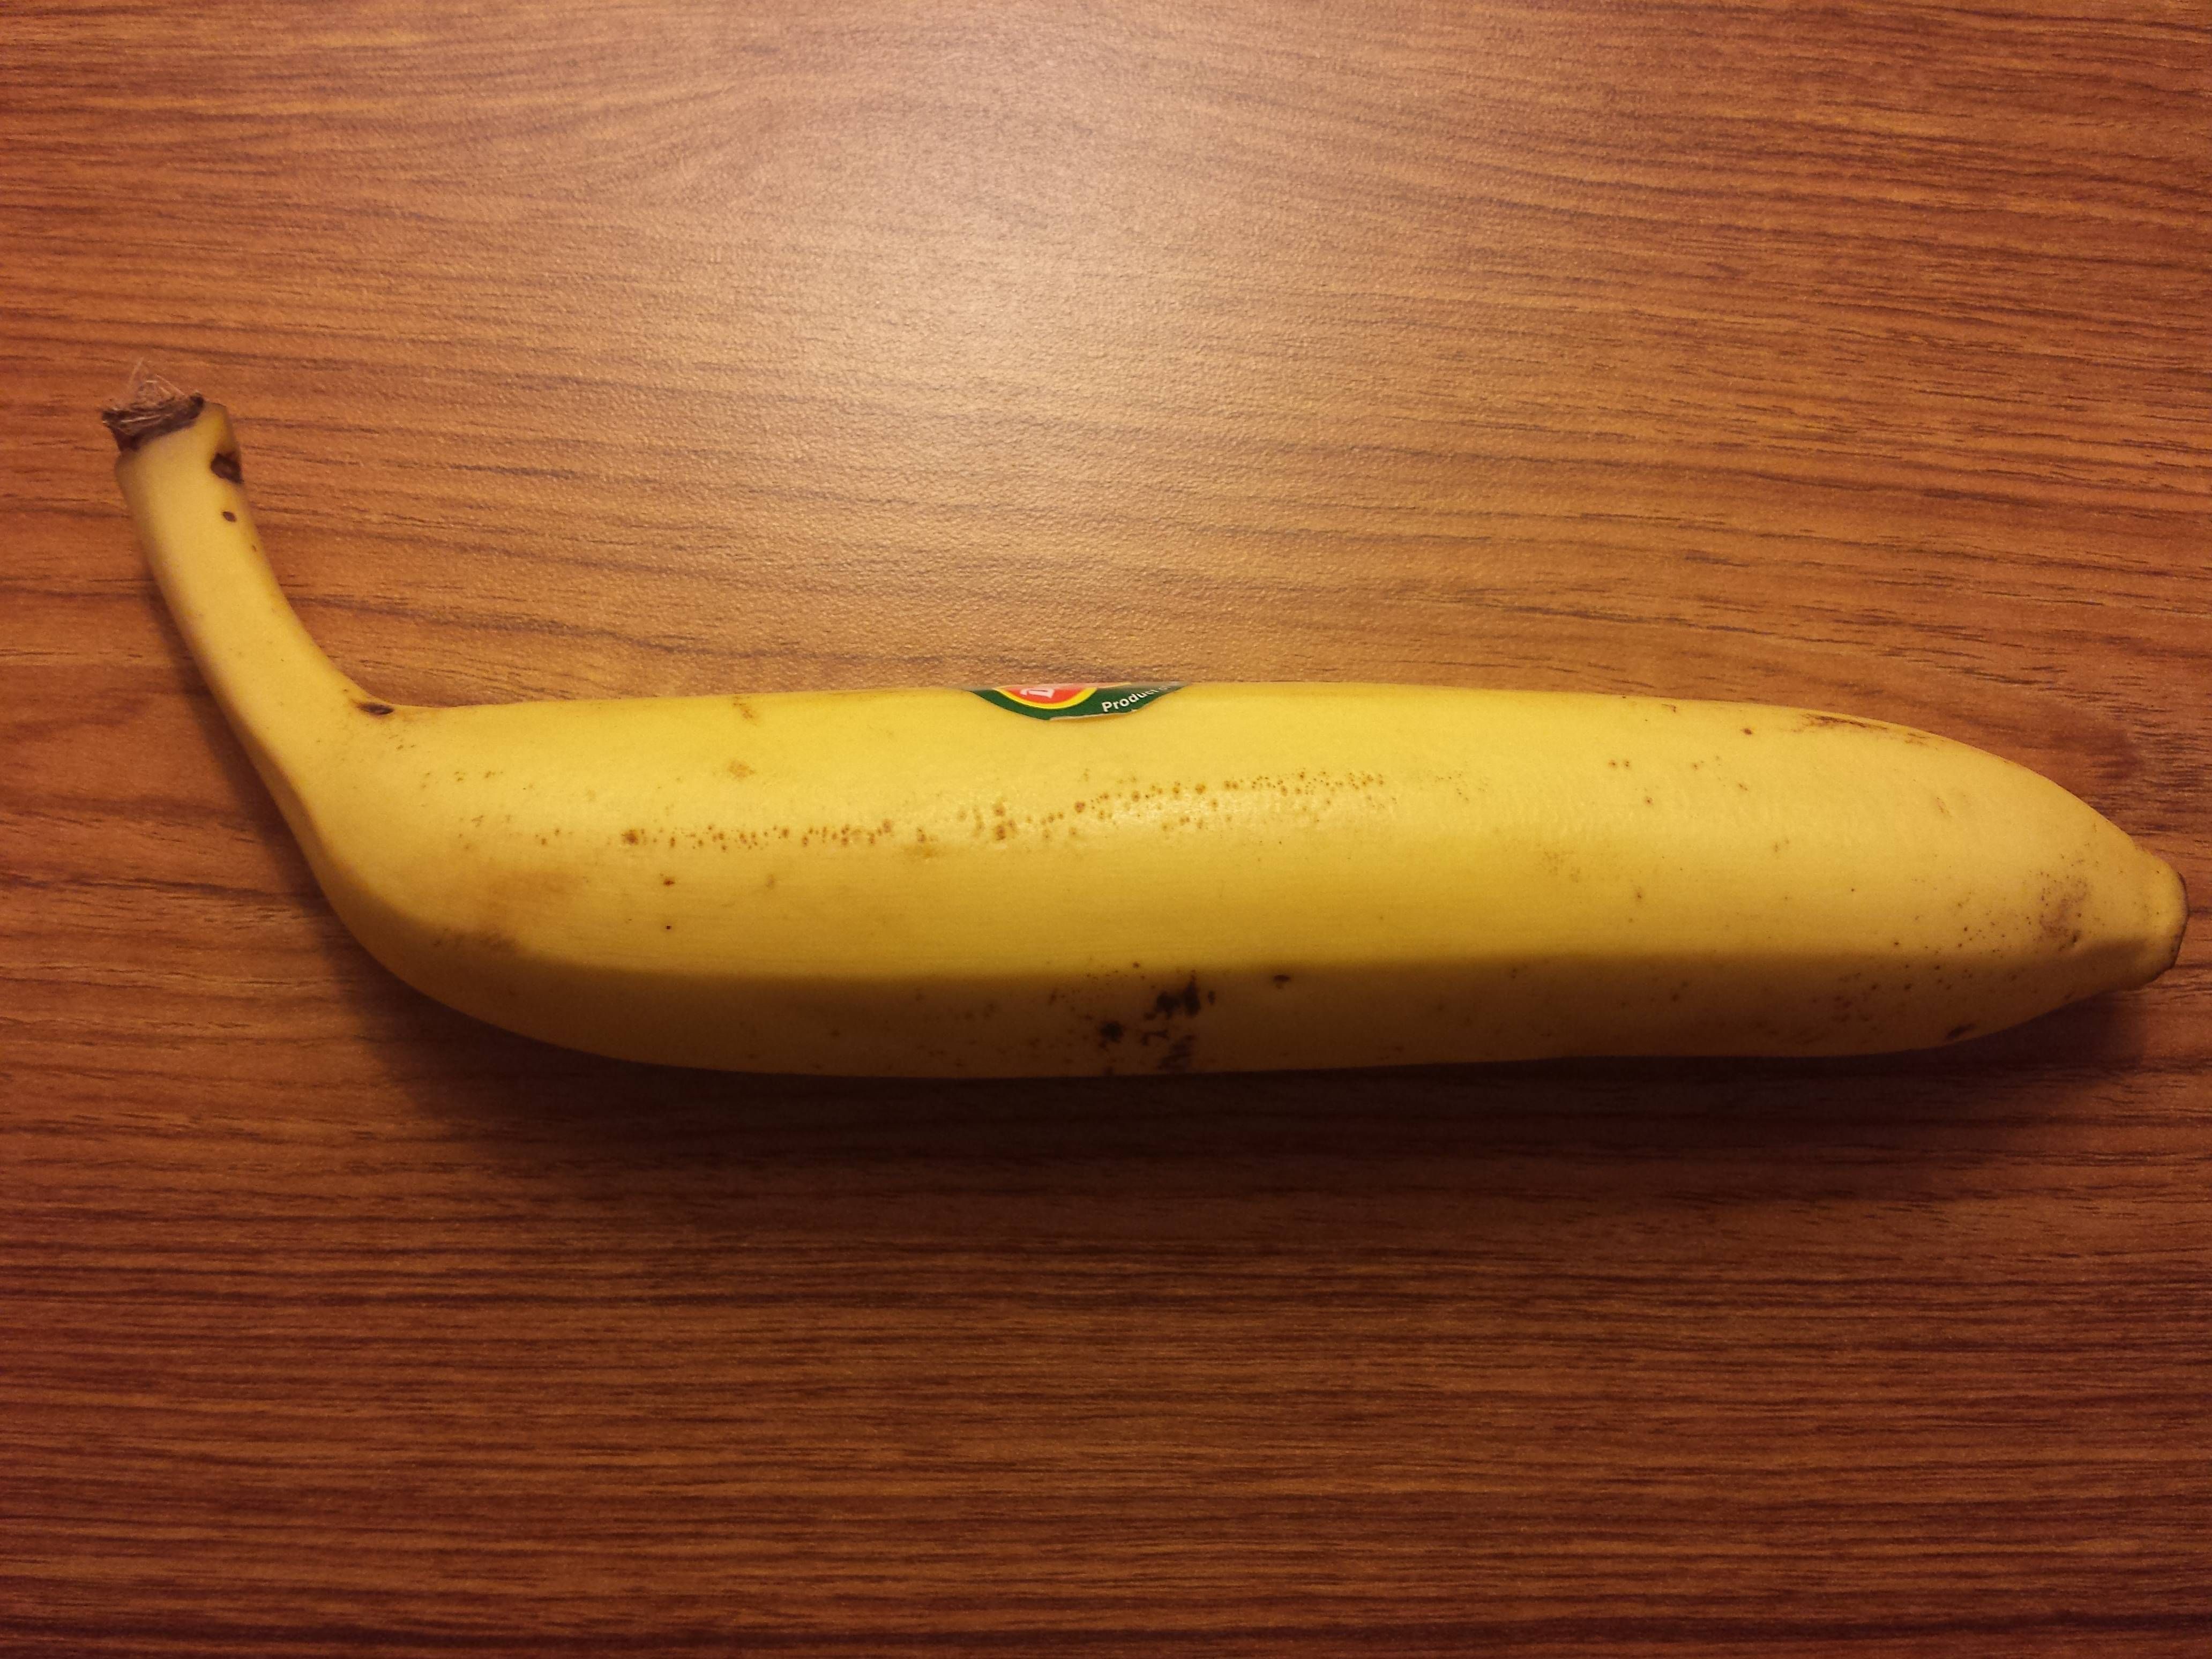 I bought a straight banana today